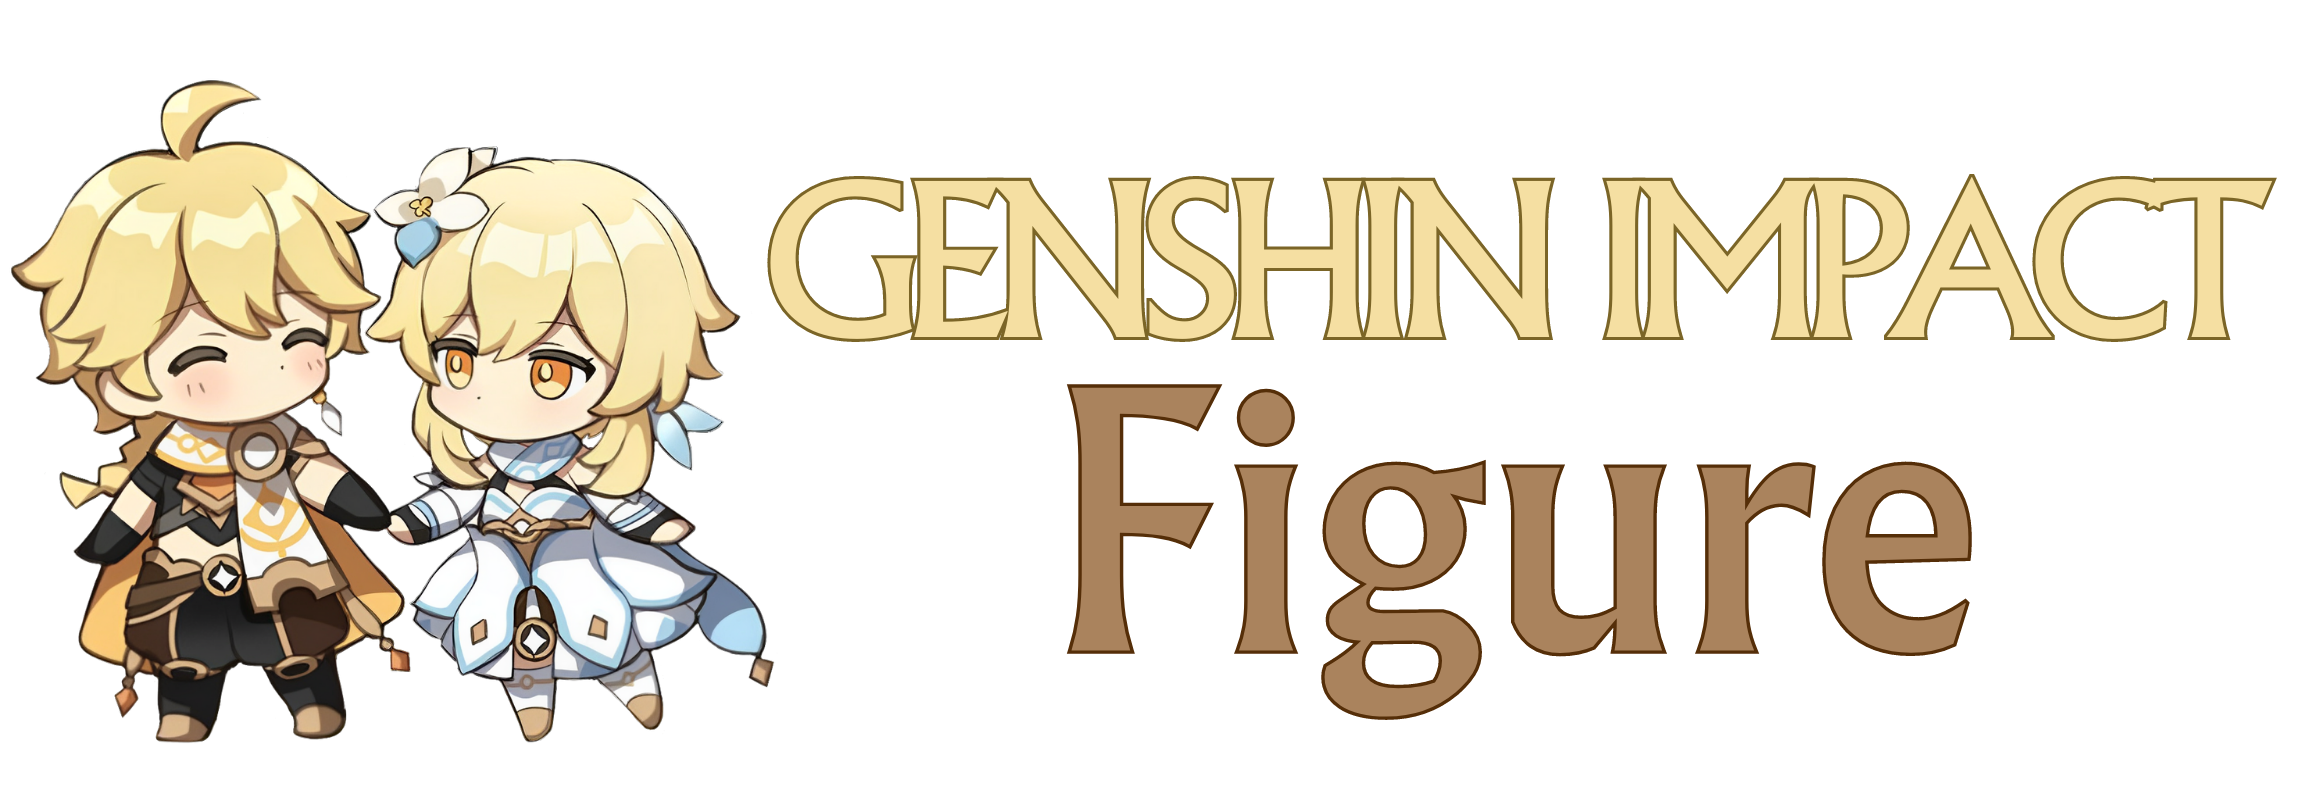 Genshin Impact figure logo - Genshin Impact Figure